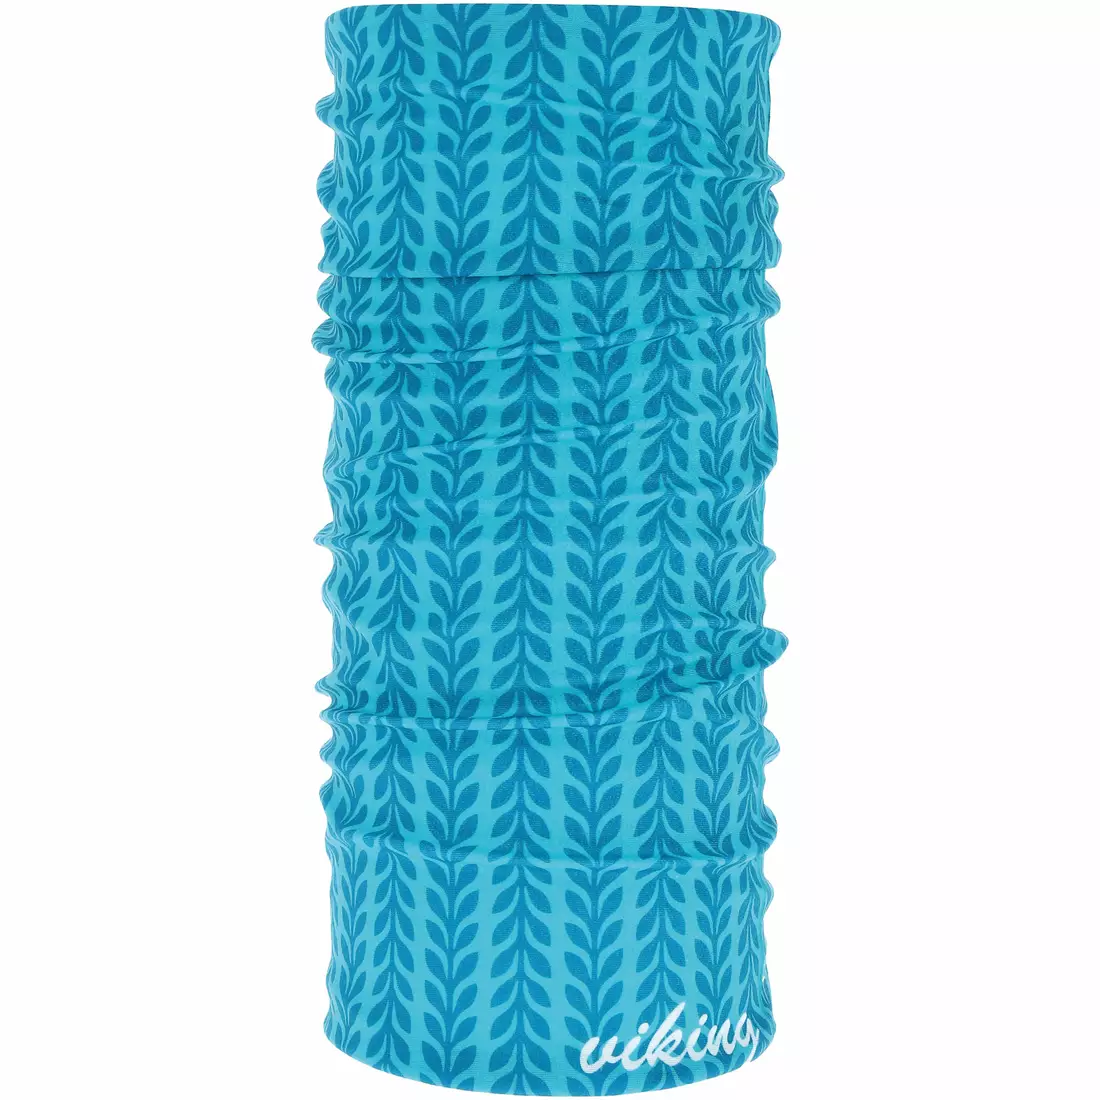 VIKING multifunkčný šátek POLARTEC OUTSIDE blue 420/23/7764/70